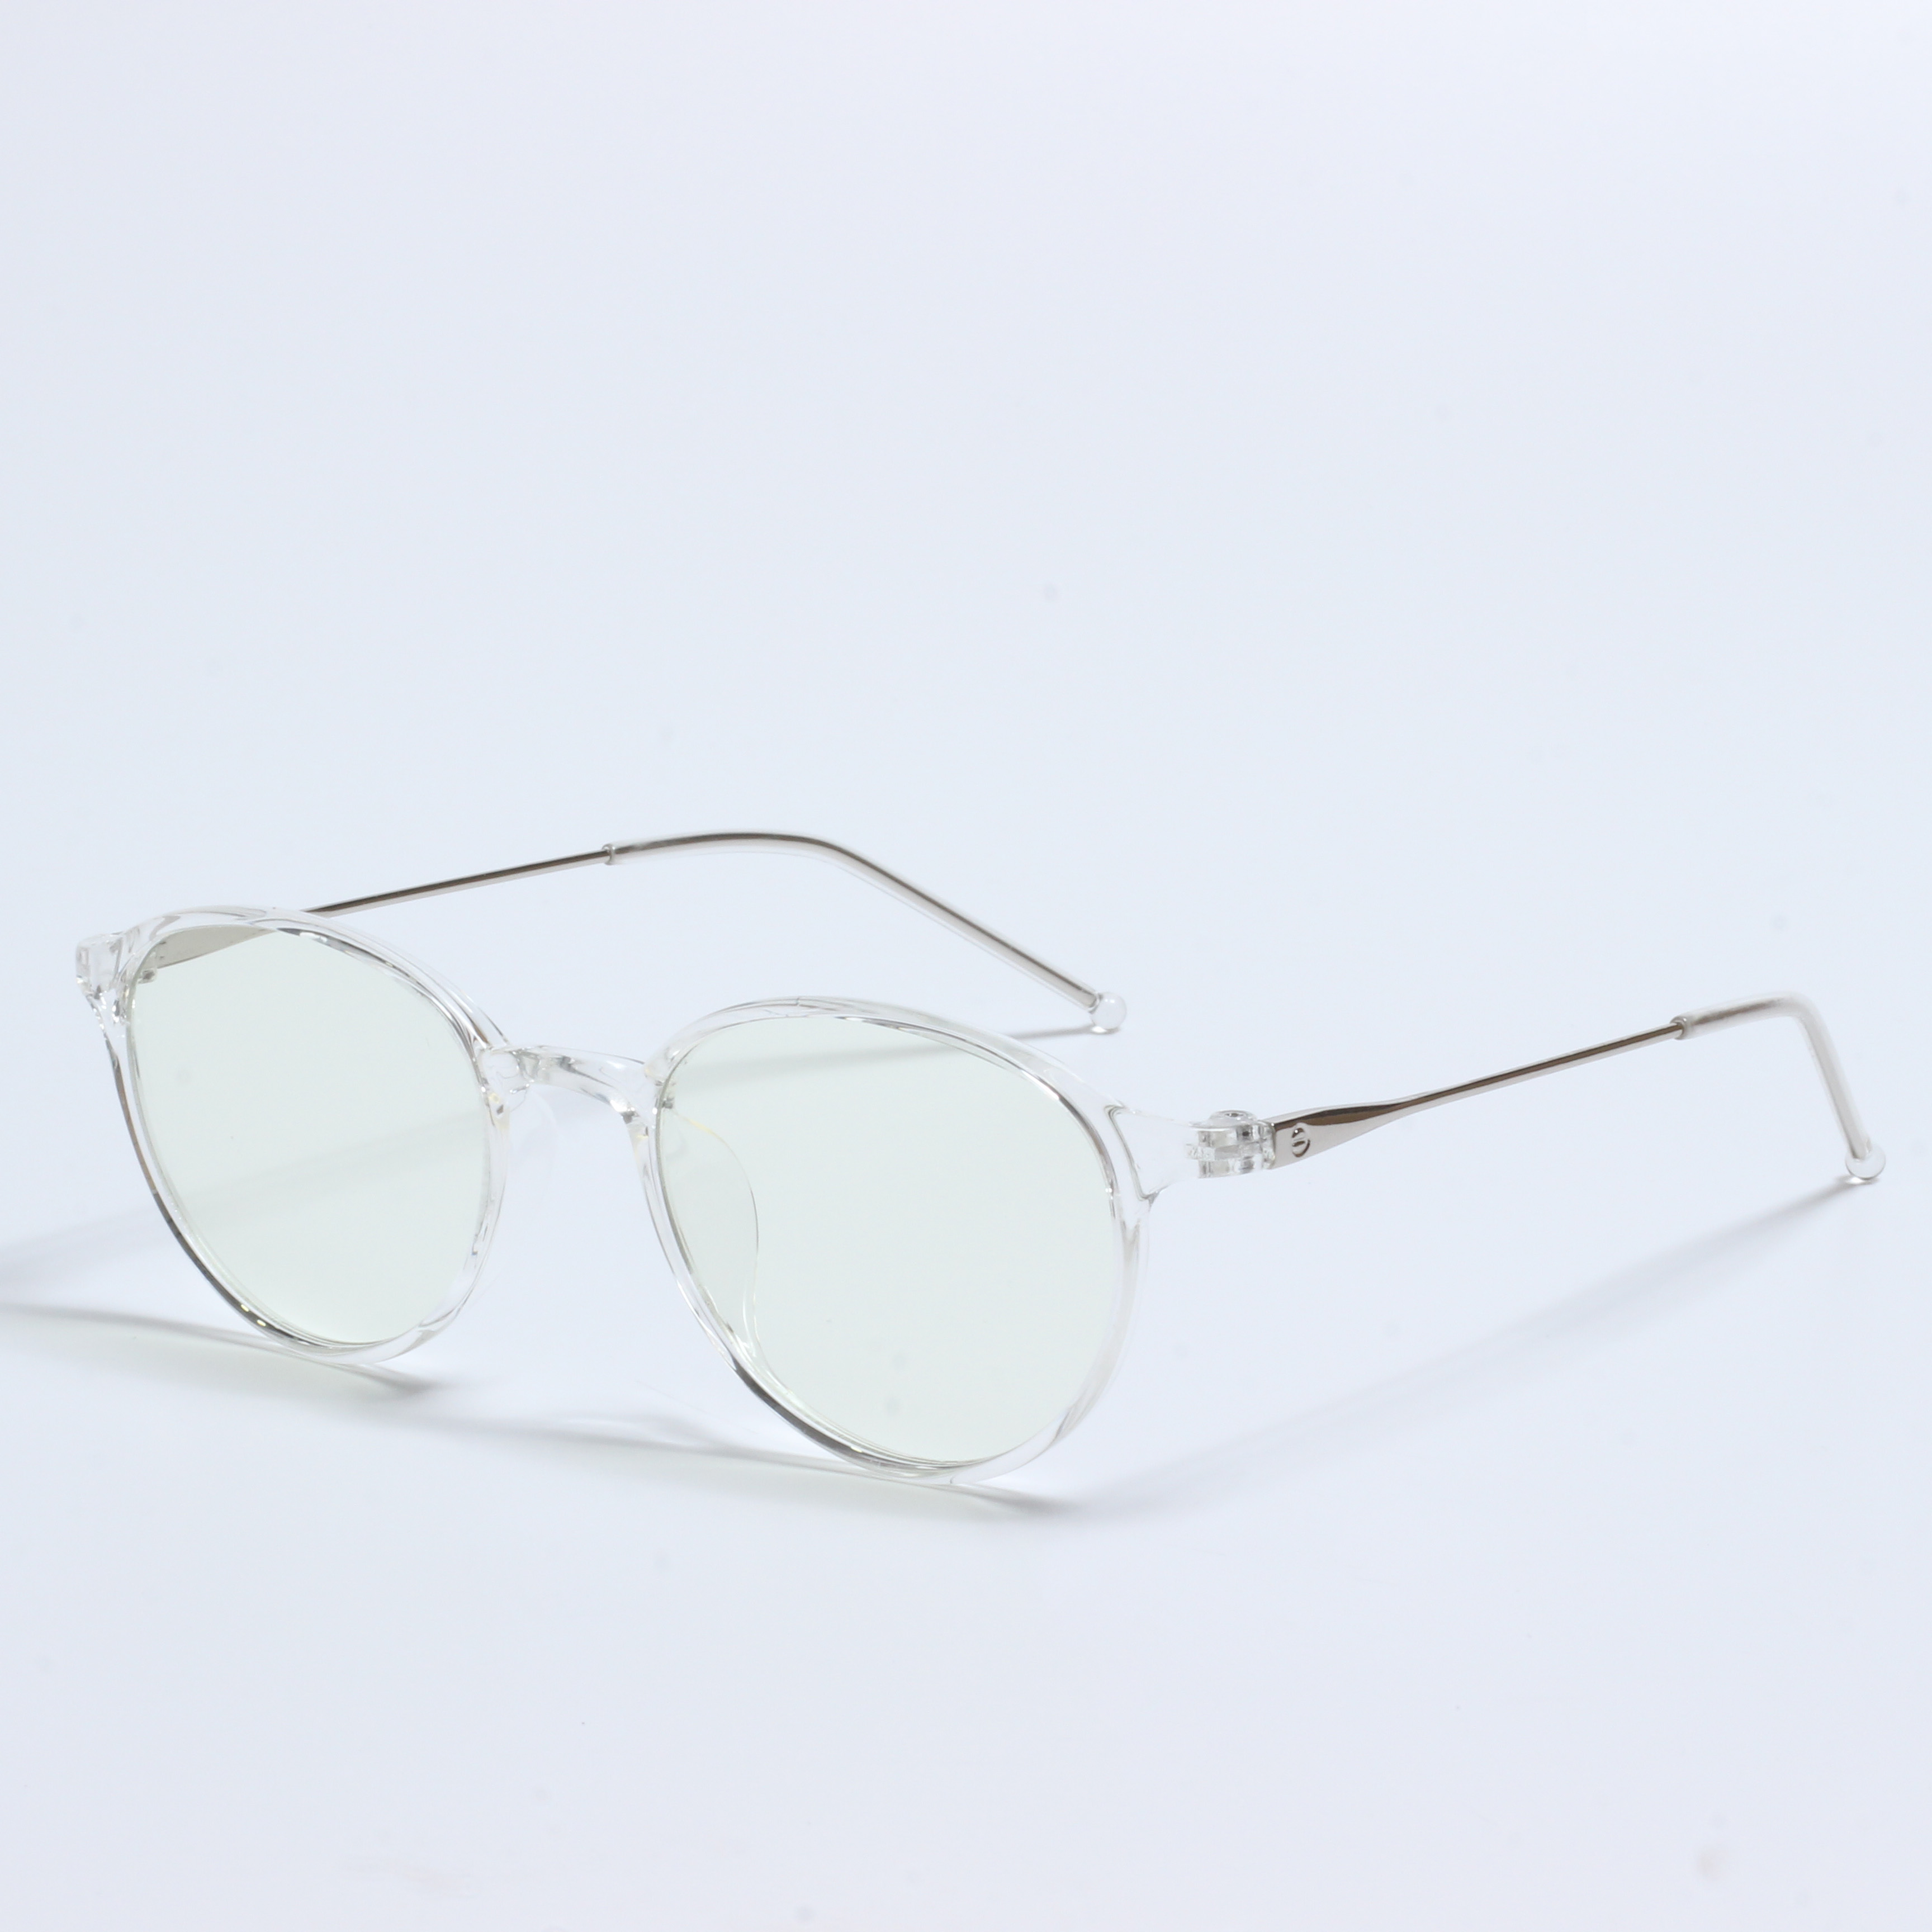 Stock clearance TR Uban sa metal optical glasses frame (5)